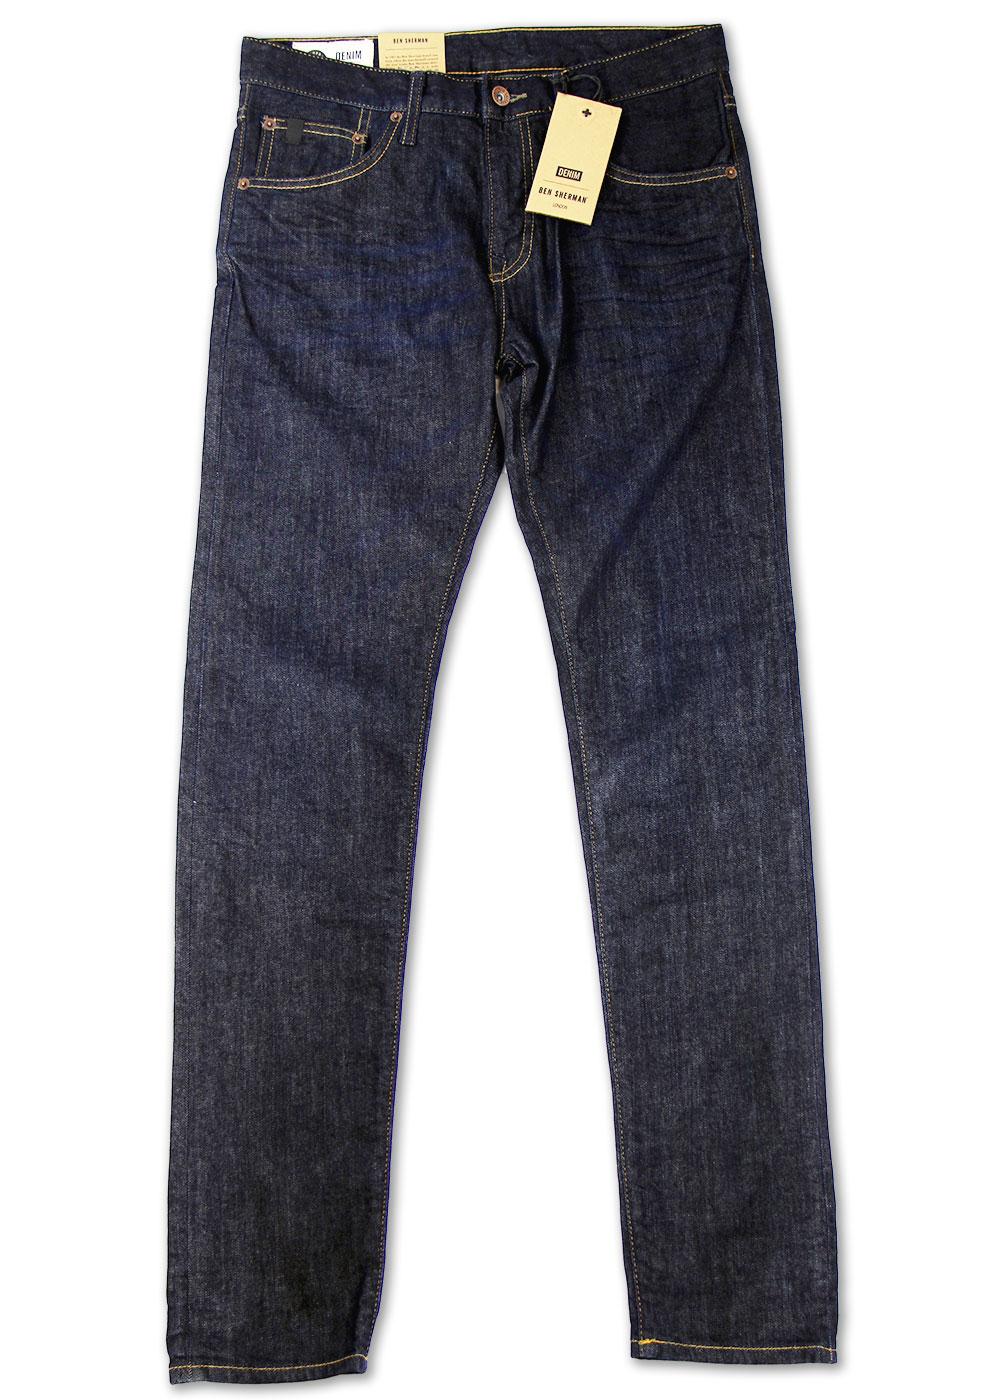 The Dingley BEN SHERMAN Retro Mod Skinny Jeans DRI